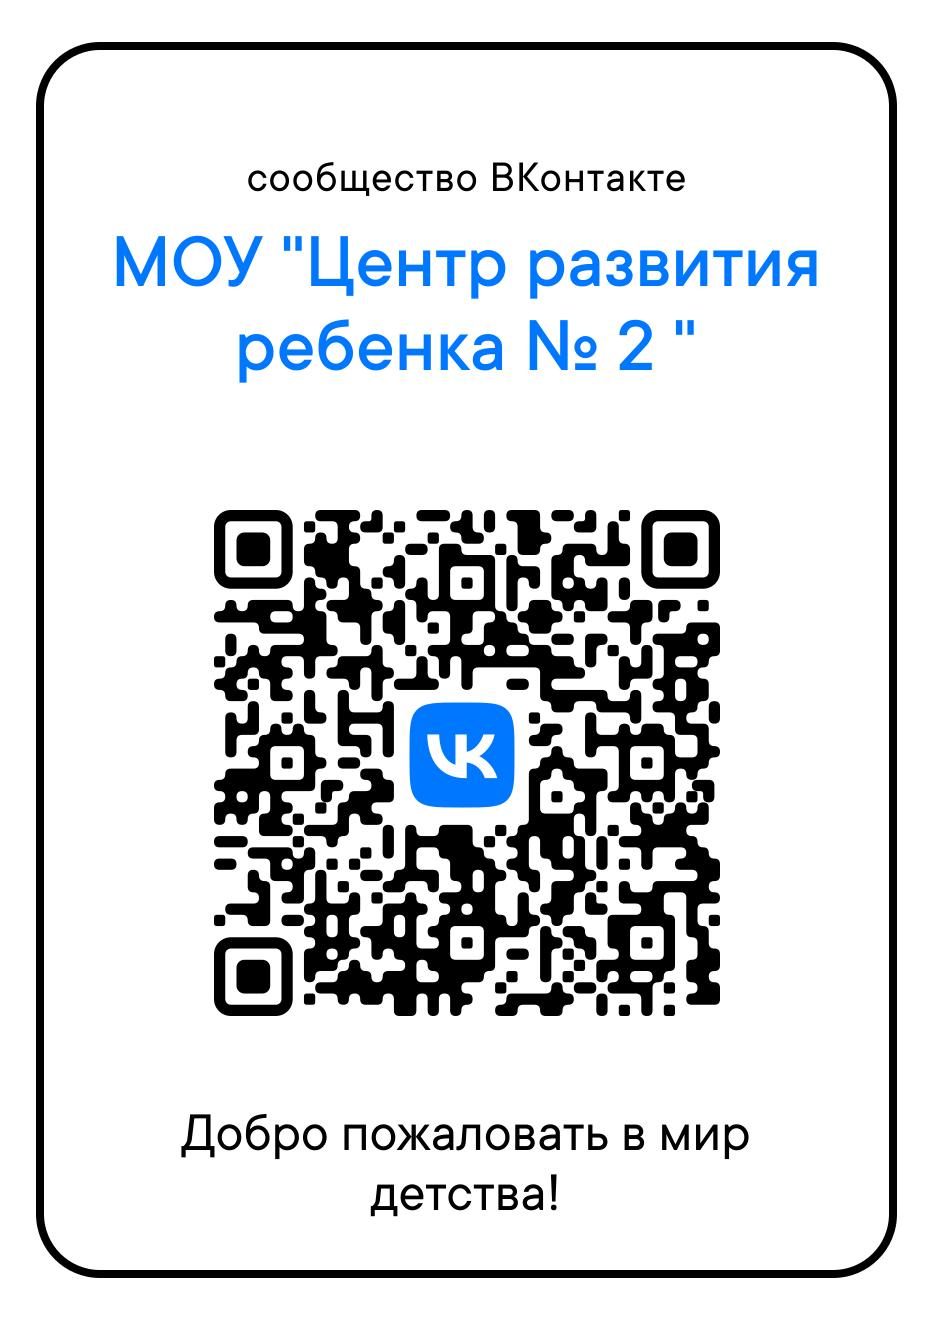 Сообщество ВКонтакте МОУ Центр развития ребенка № 2